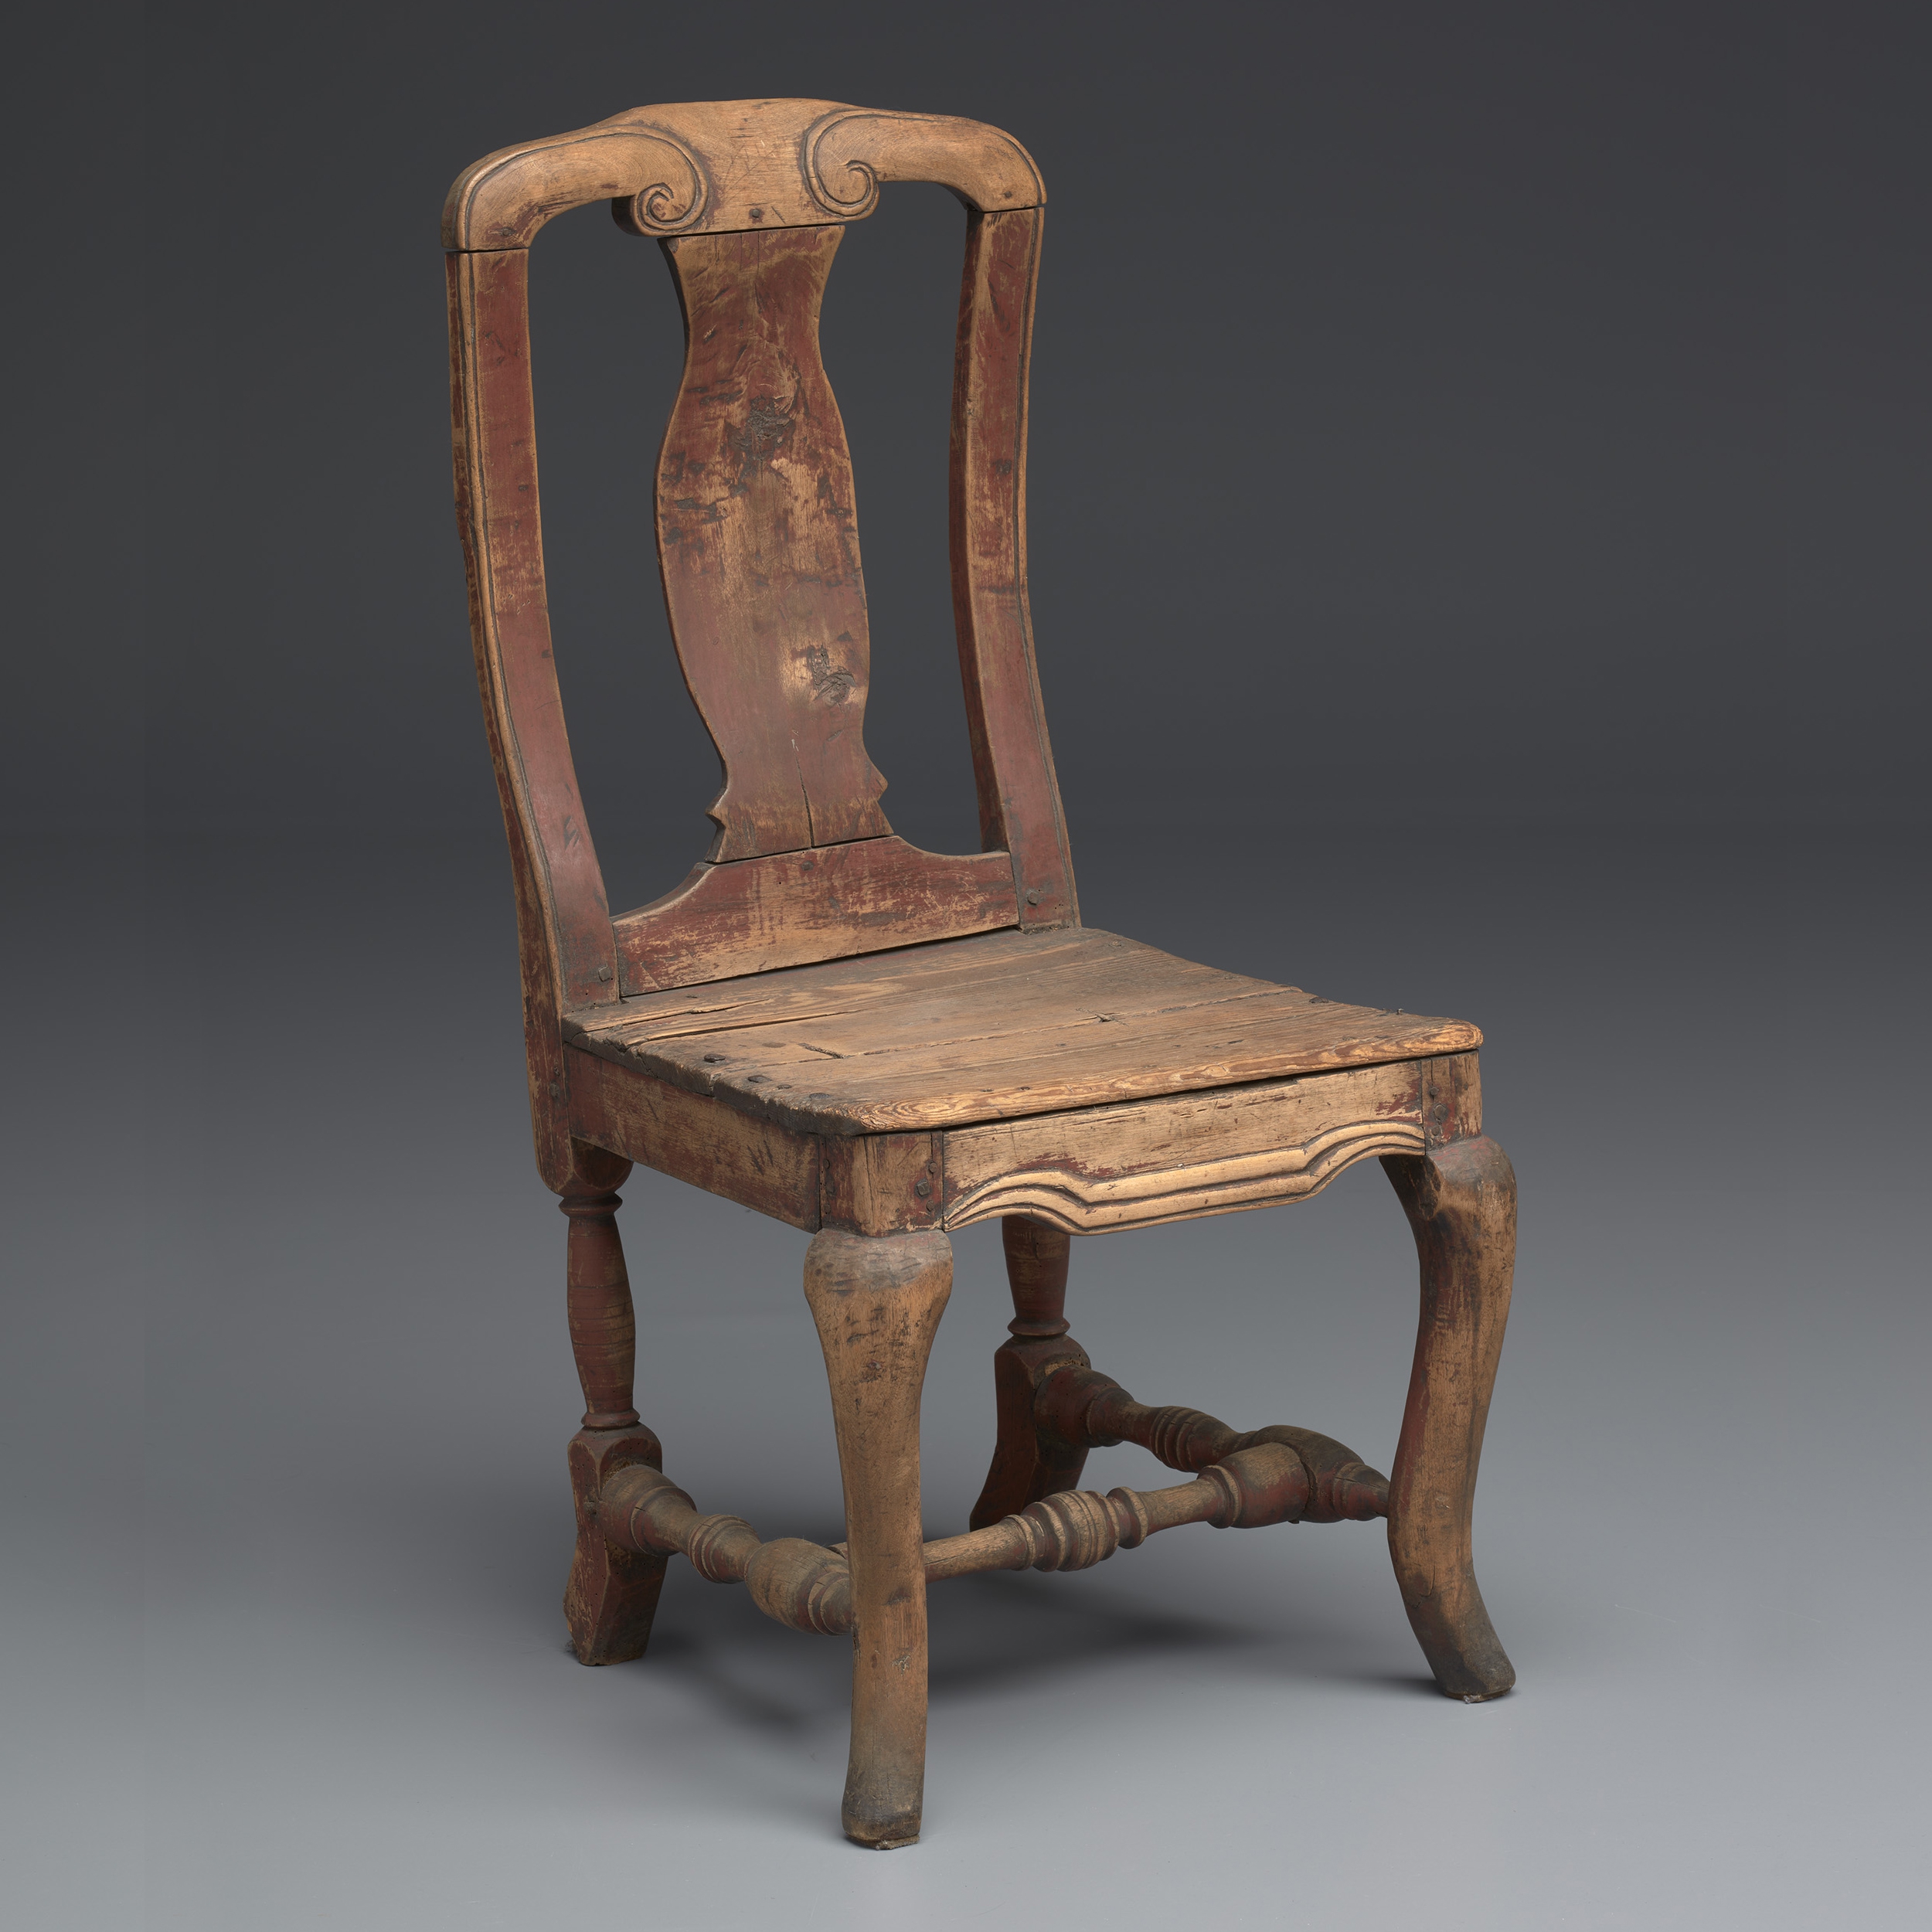 Varhaisrokokoovaikutteinen tuoli 1700-luvulta